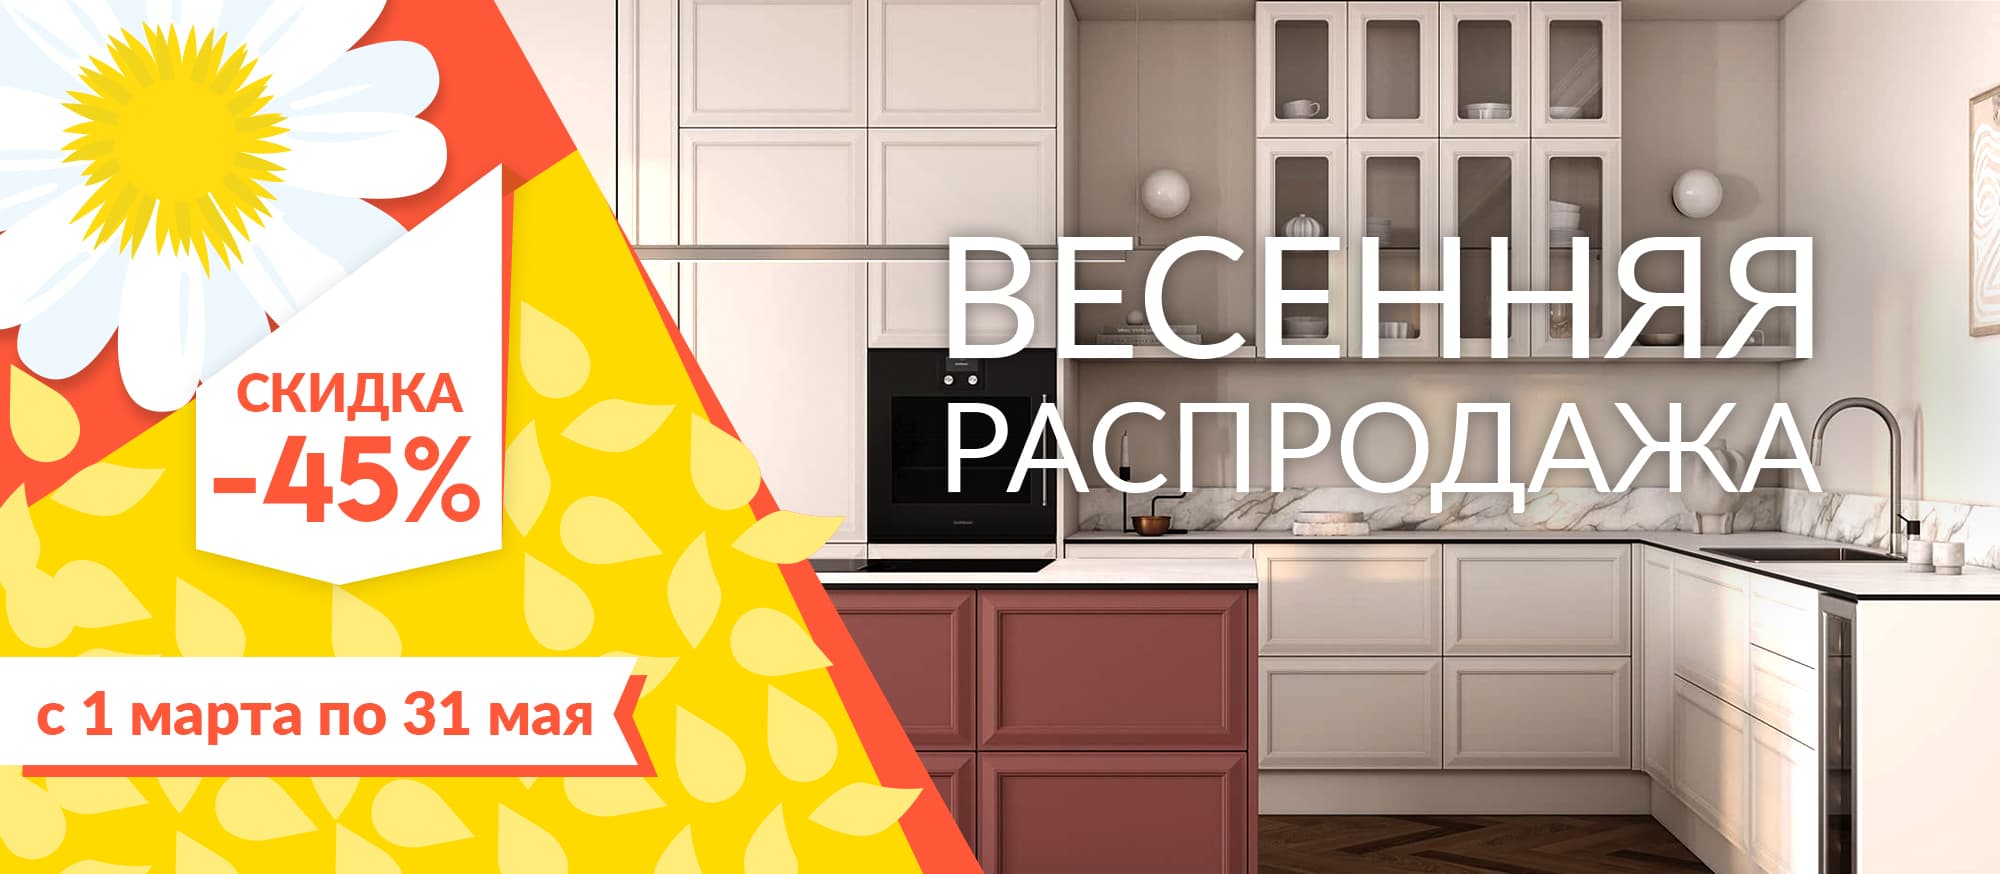 Кухни Нижний Новгород Недорого Цены Фото